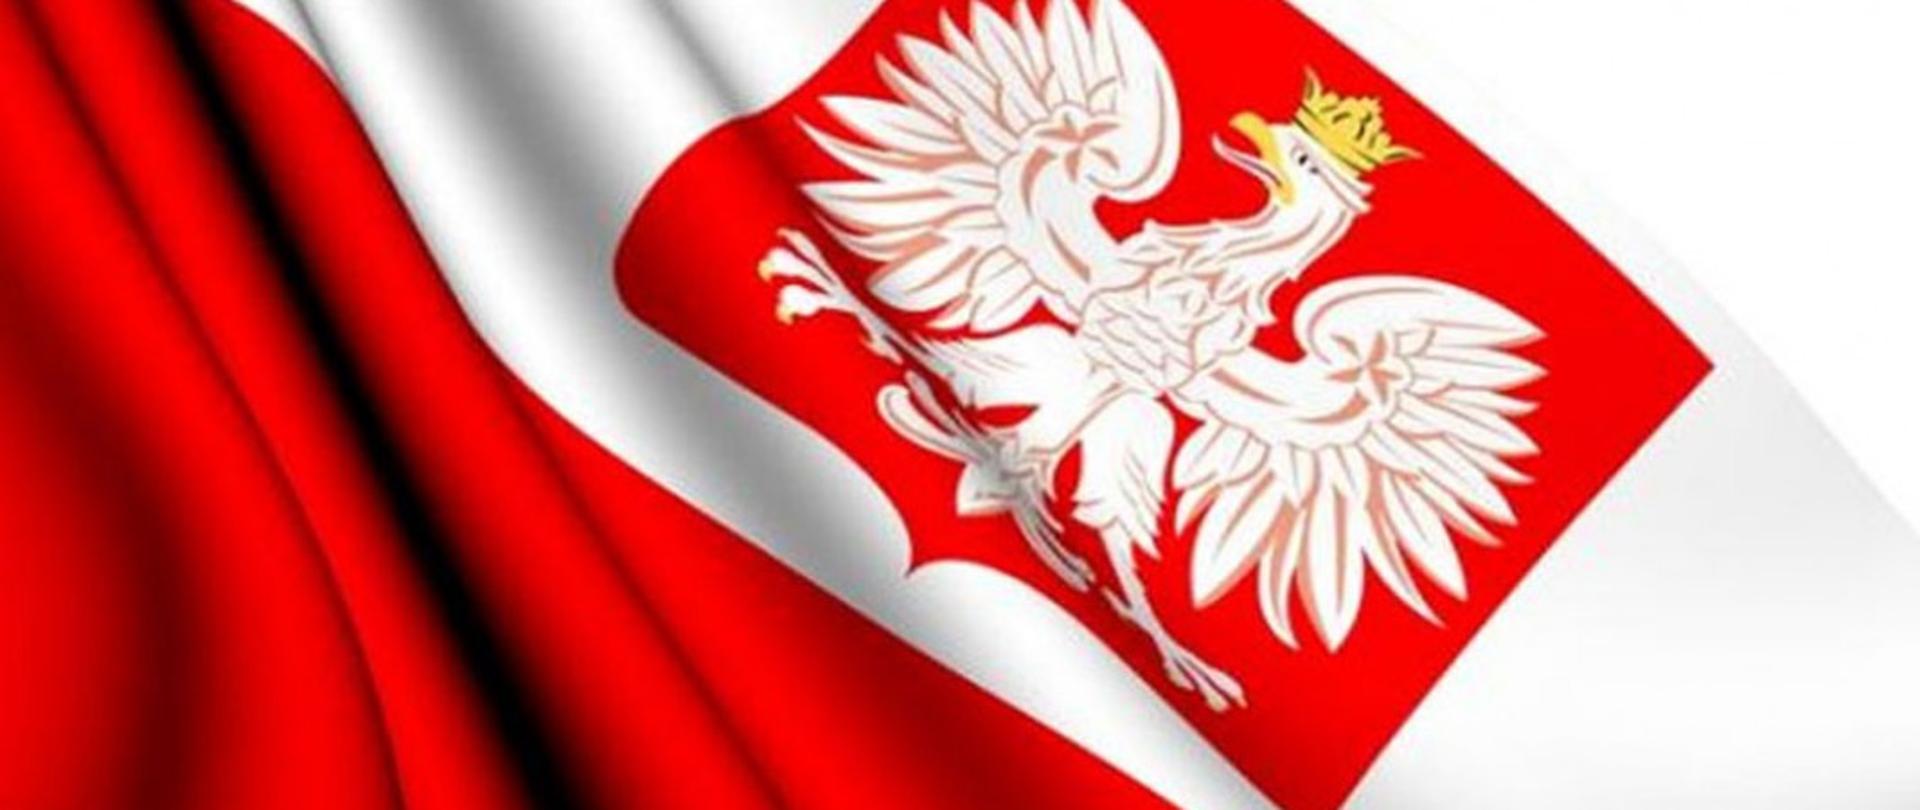 Biało czerwona flaga z godłem polski.